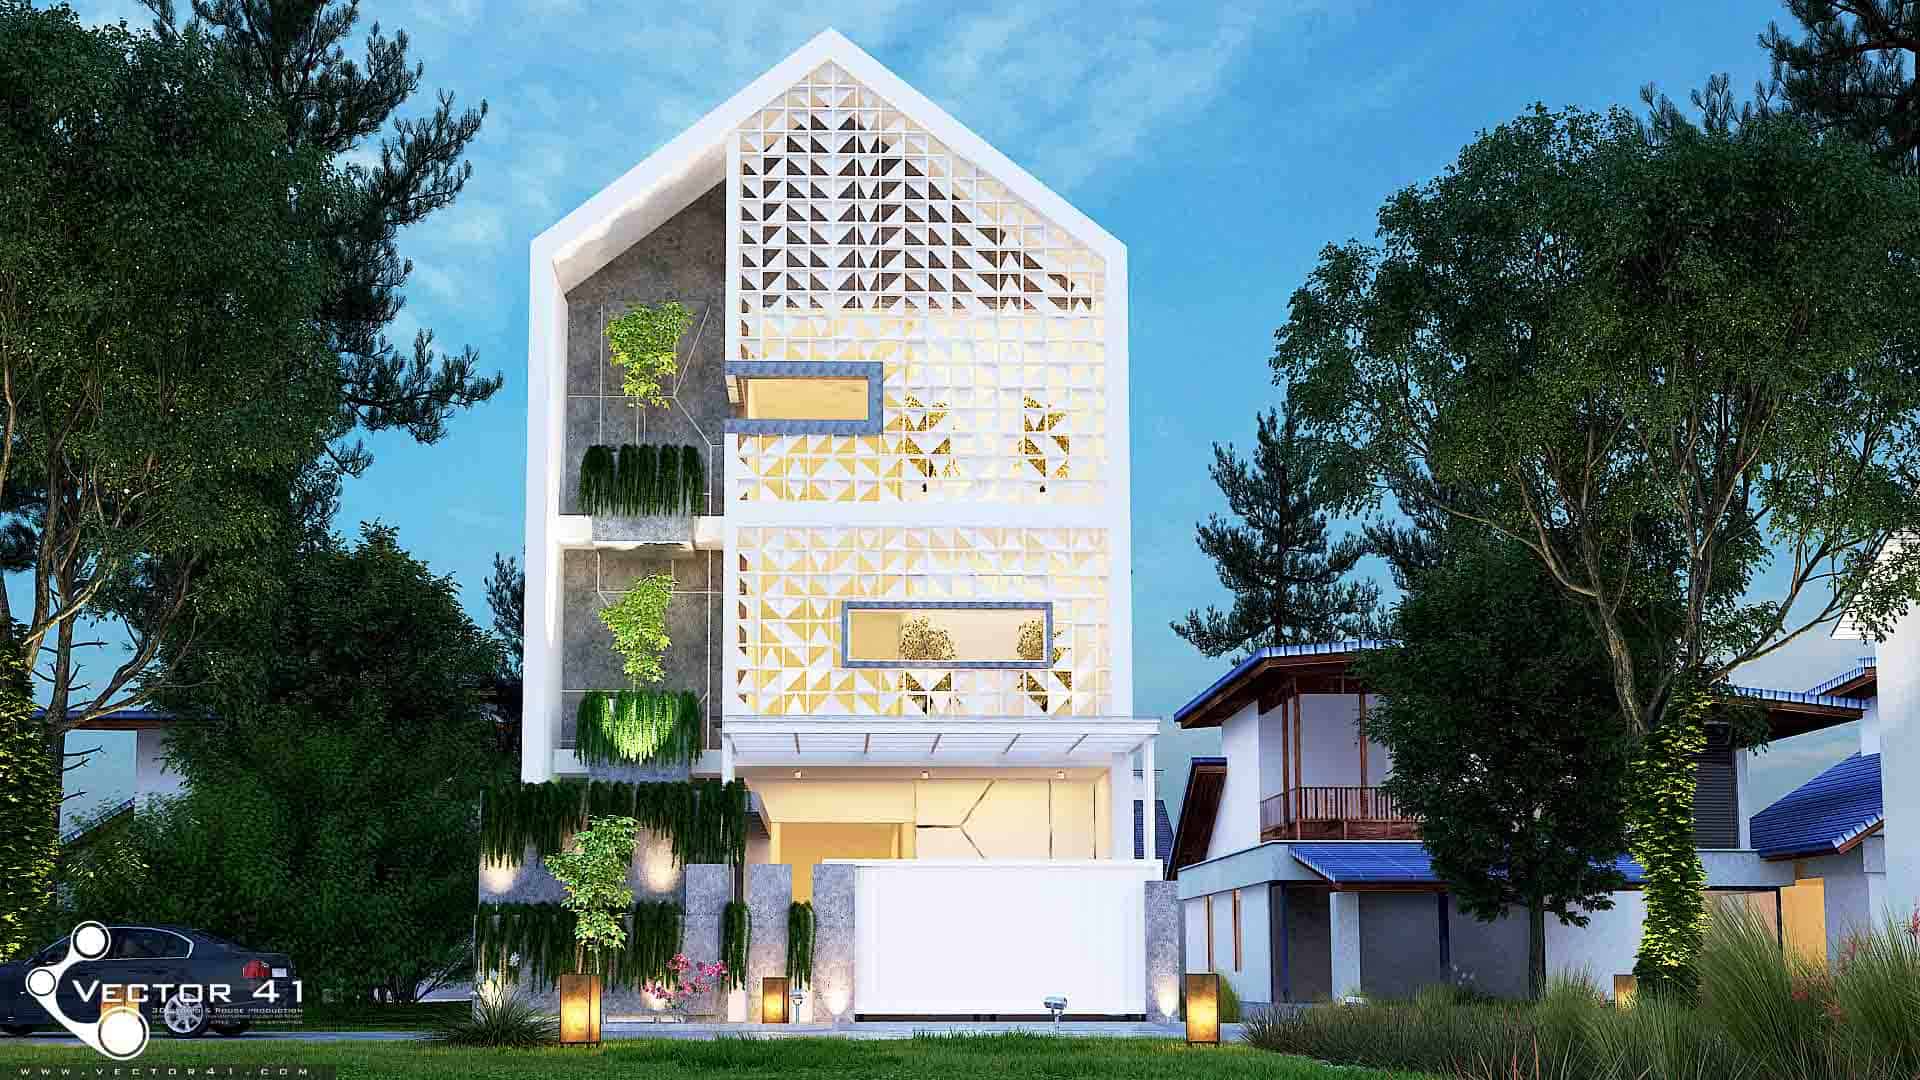 Desain Rumah Minimalis Model Rumah Minimalis VECTOR 41 Arsitek